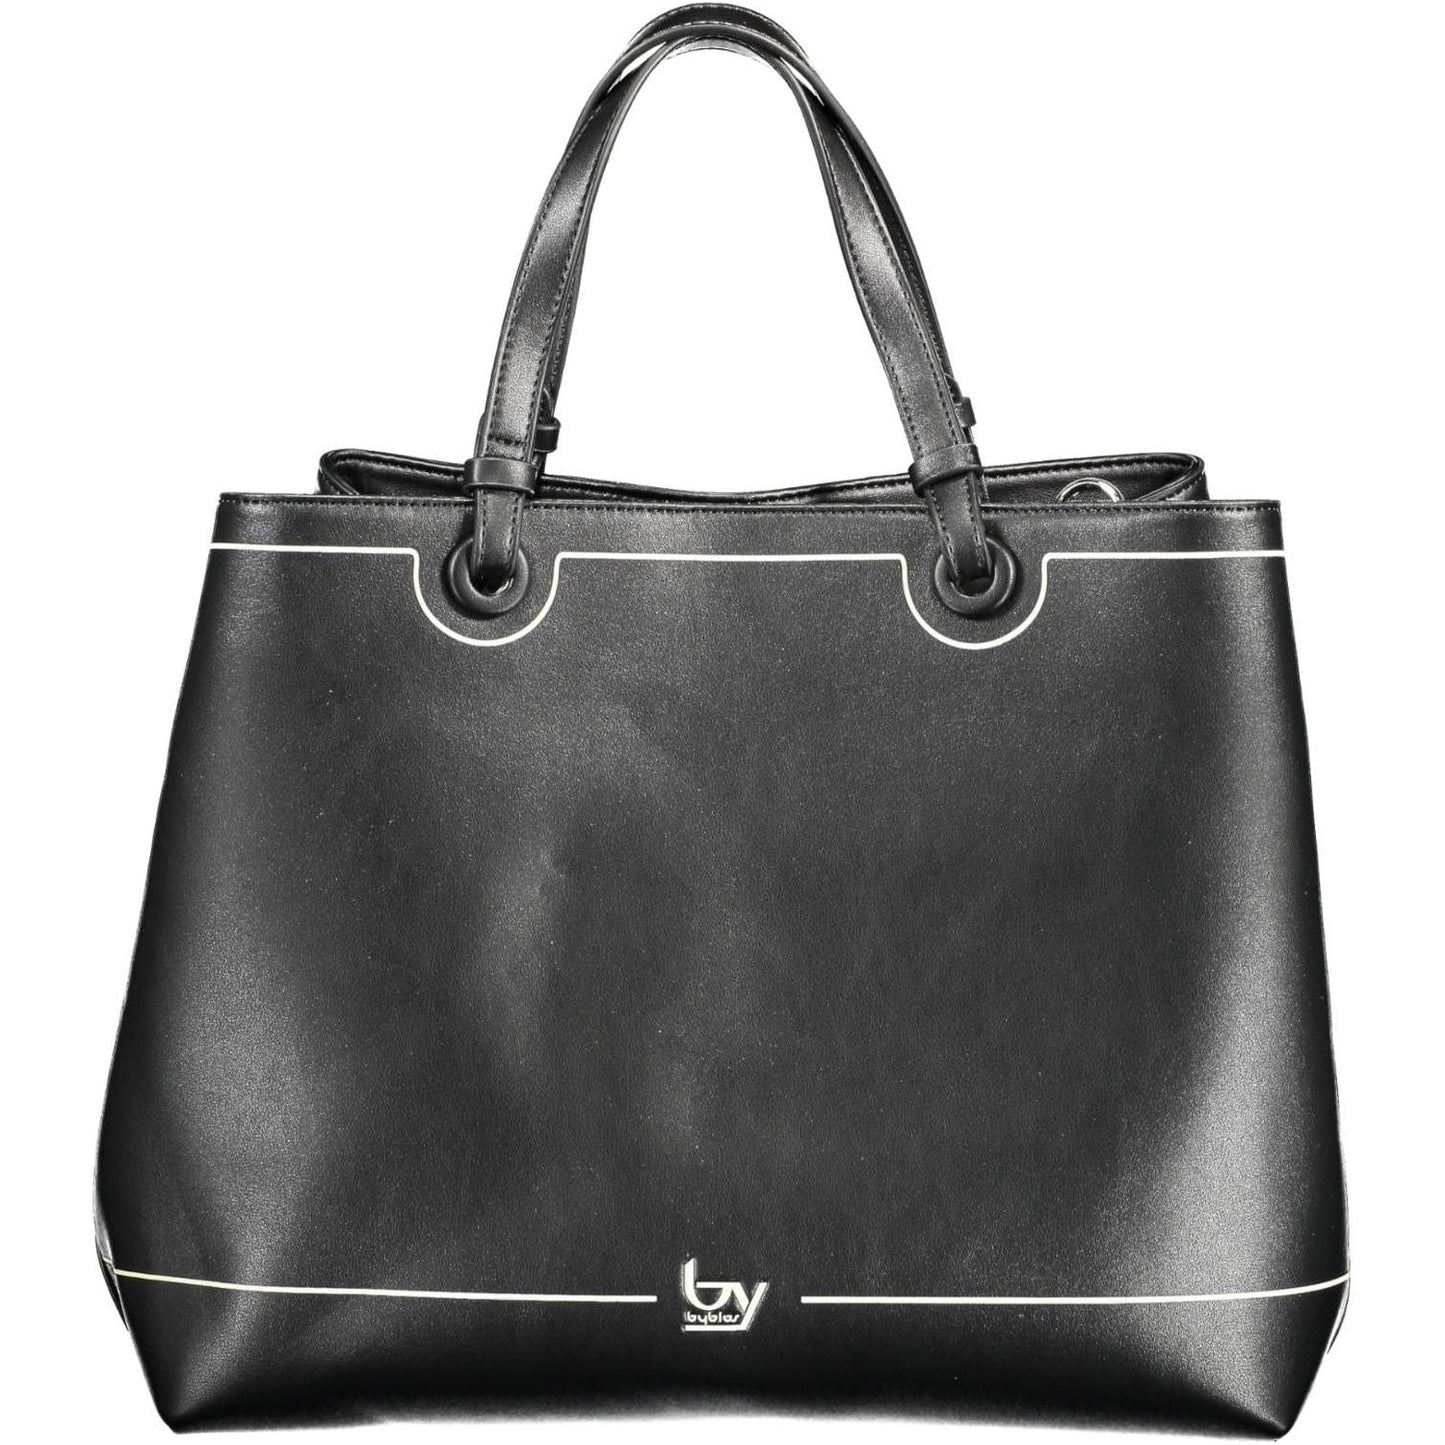 BYBLOS Elegant Black Two-Handled Shoulder Bag elegant-black-two-handled-shoulder-bag